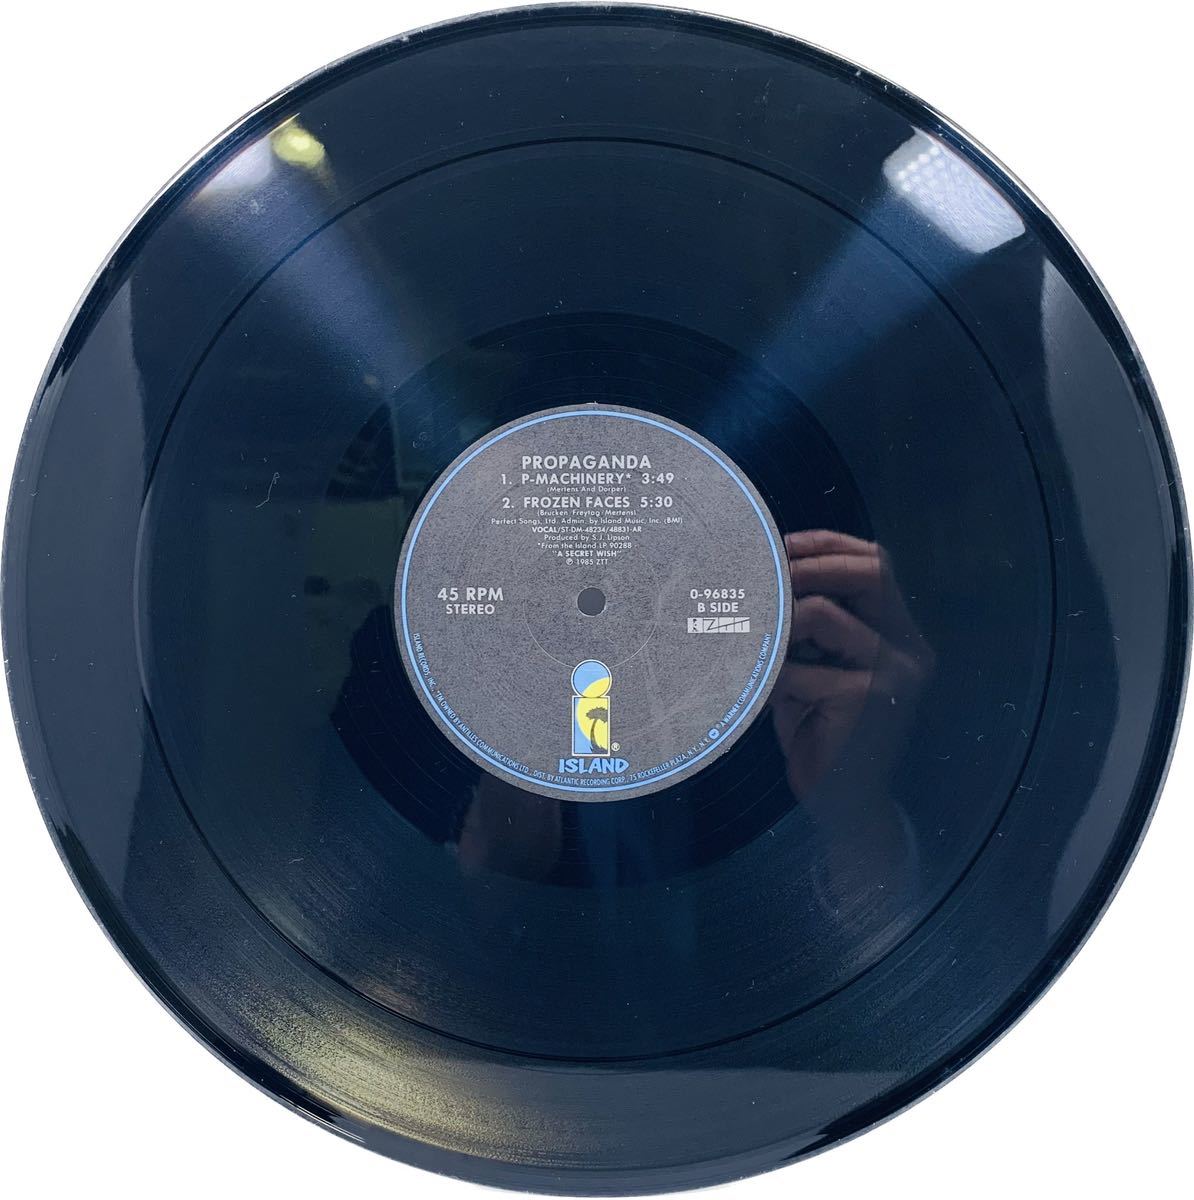 【まとめ発送可!!】PROPAGANDA MACHINERY プロパガンダ マシナリー 0-96835 ISLAND RECORDS INC レコード盤 レコード 盤の画像2